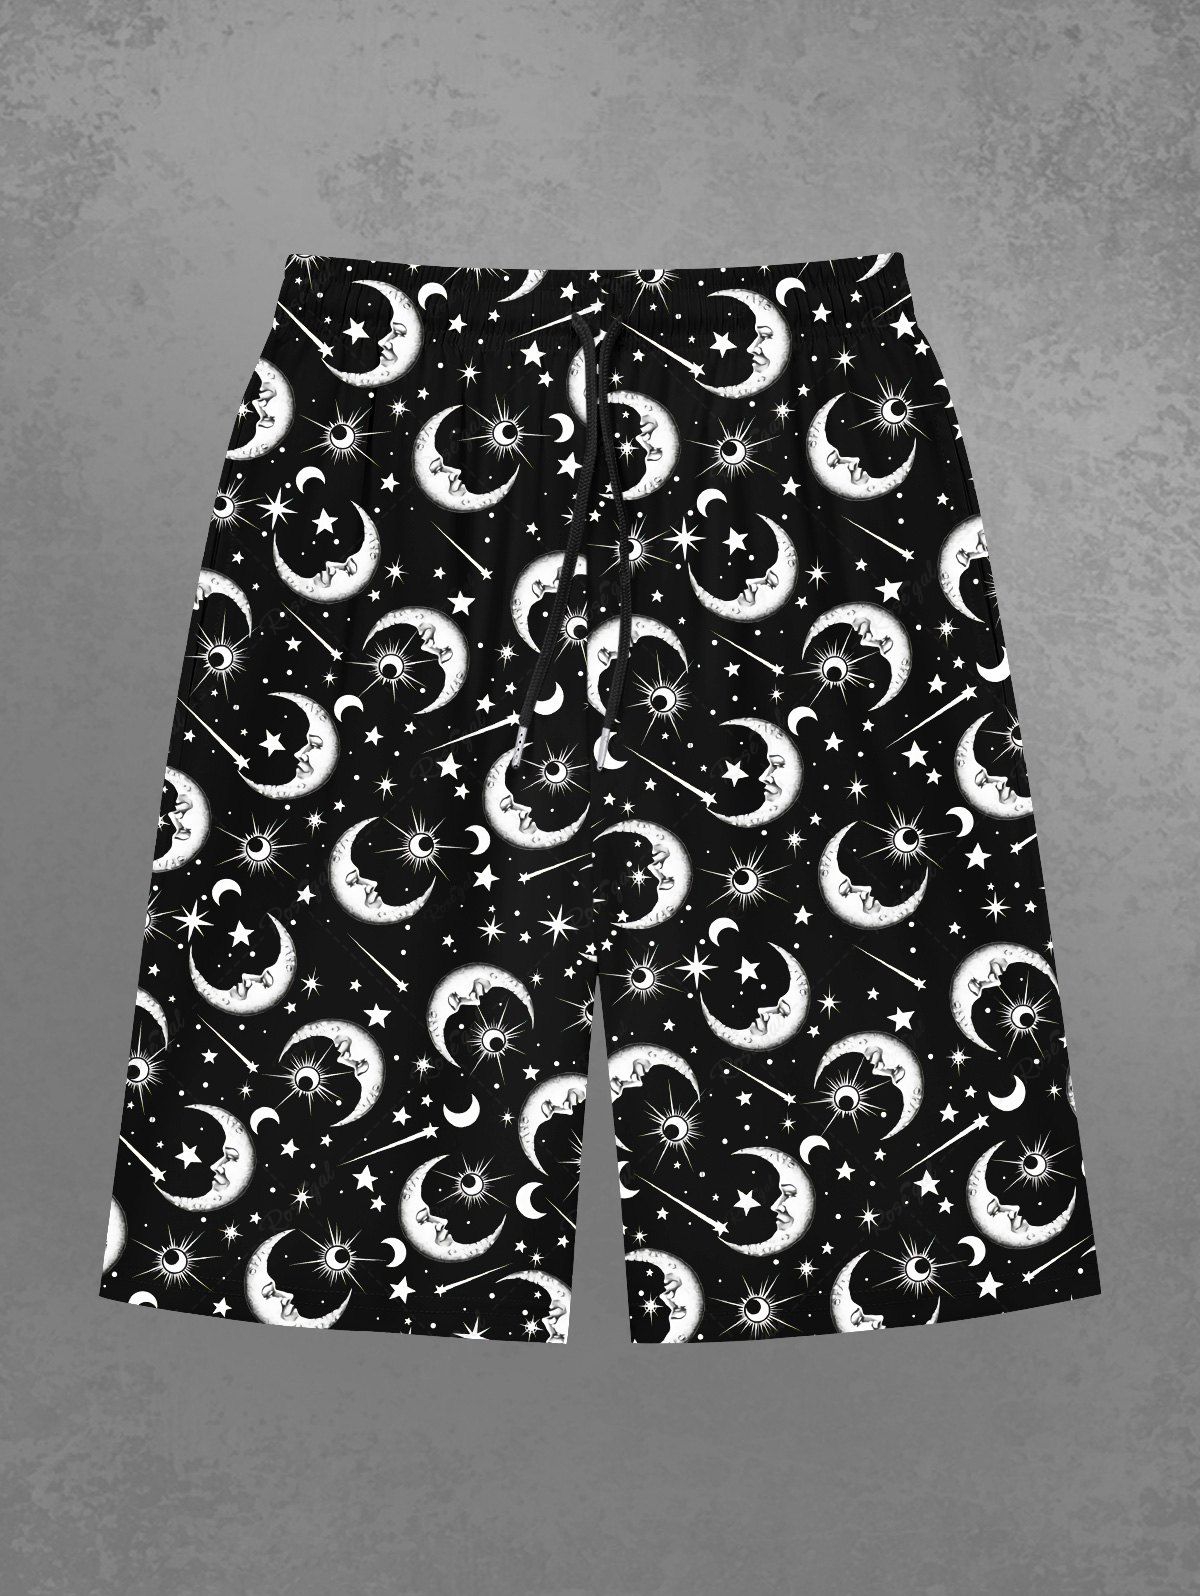 Latest Gothic Galaxy Moon Sun Star Print Beach Shorts For Men  